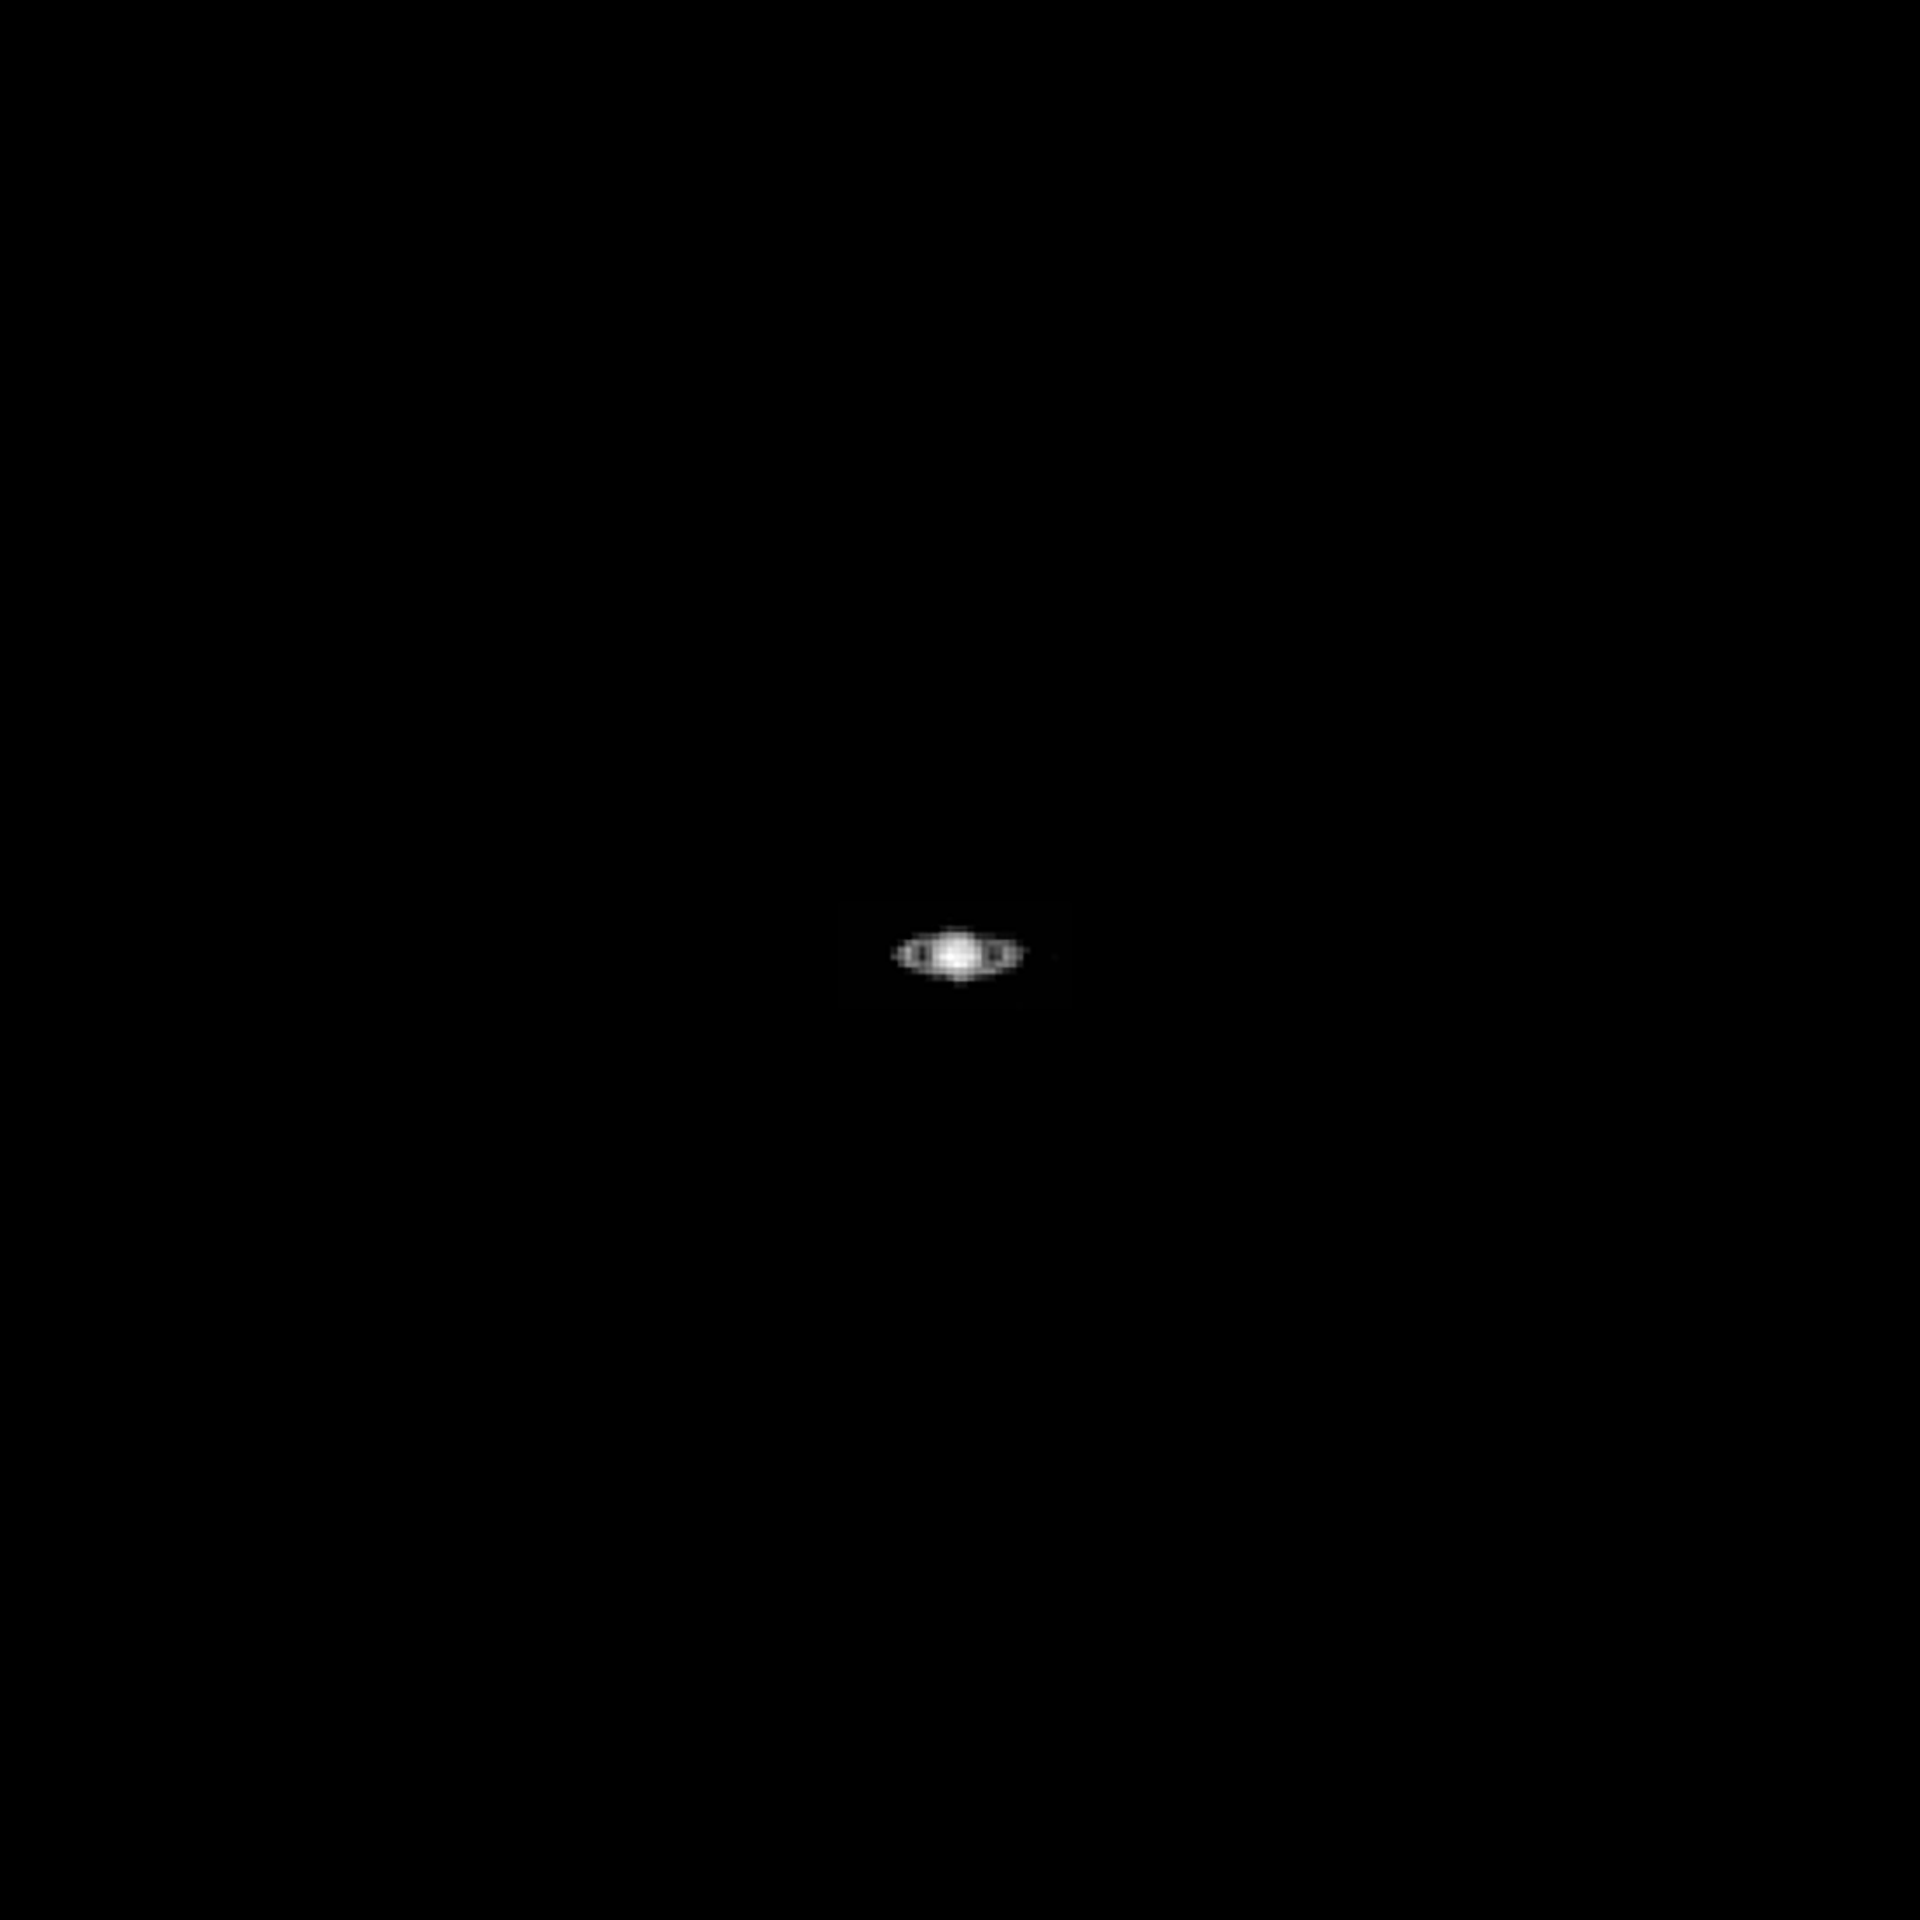 Saturno visto a partir da Lua, foto aumentada 4 vezes - Sputnik Brasil, 1920, 29.11.2021